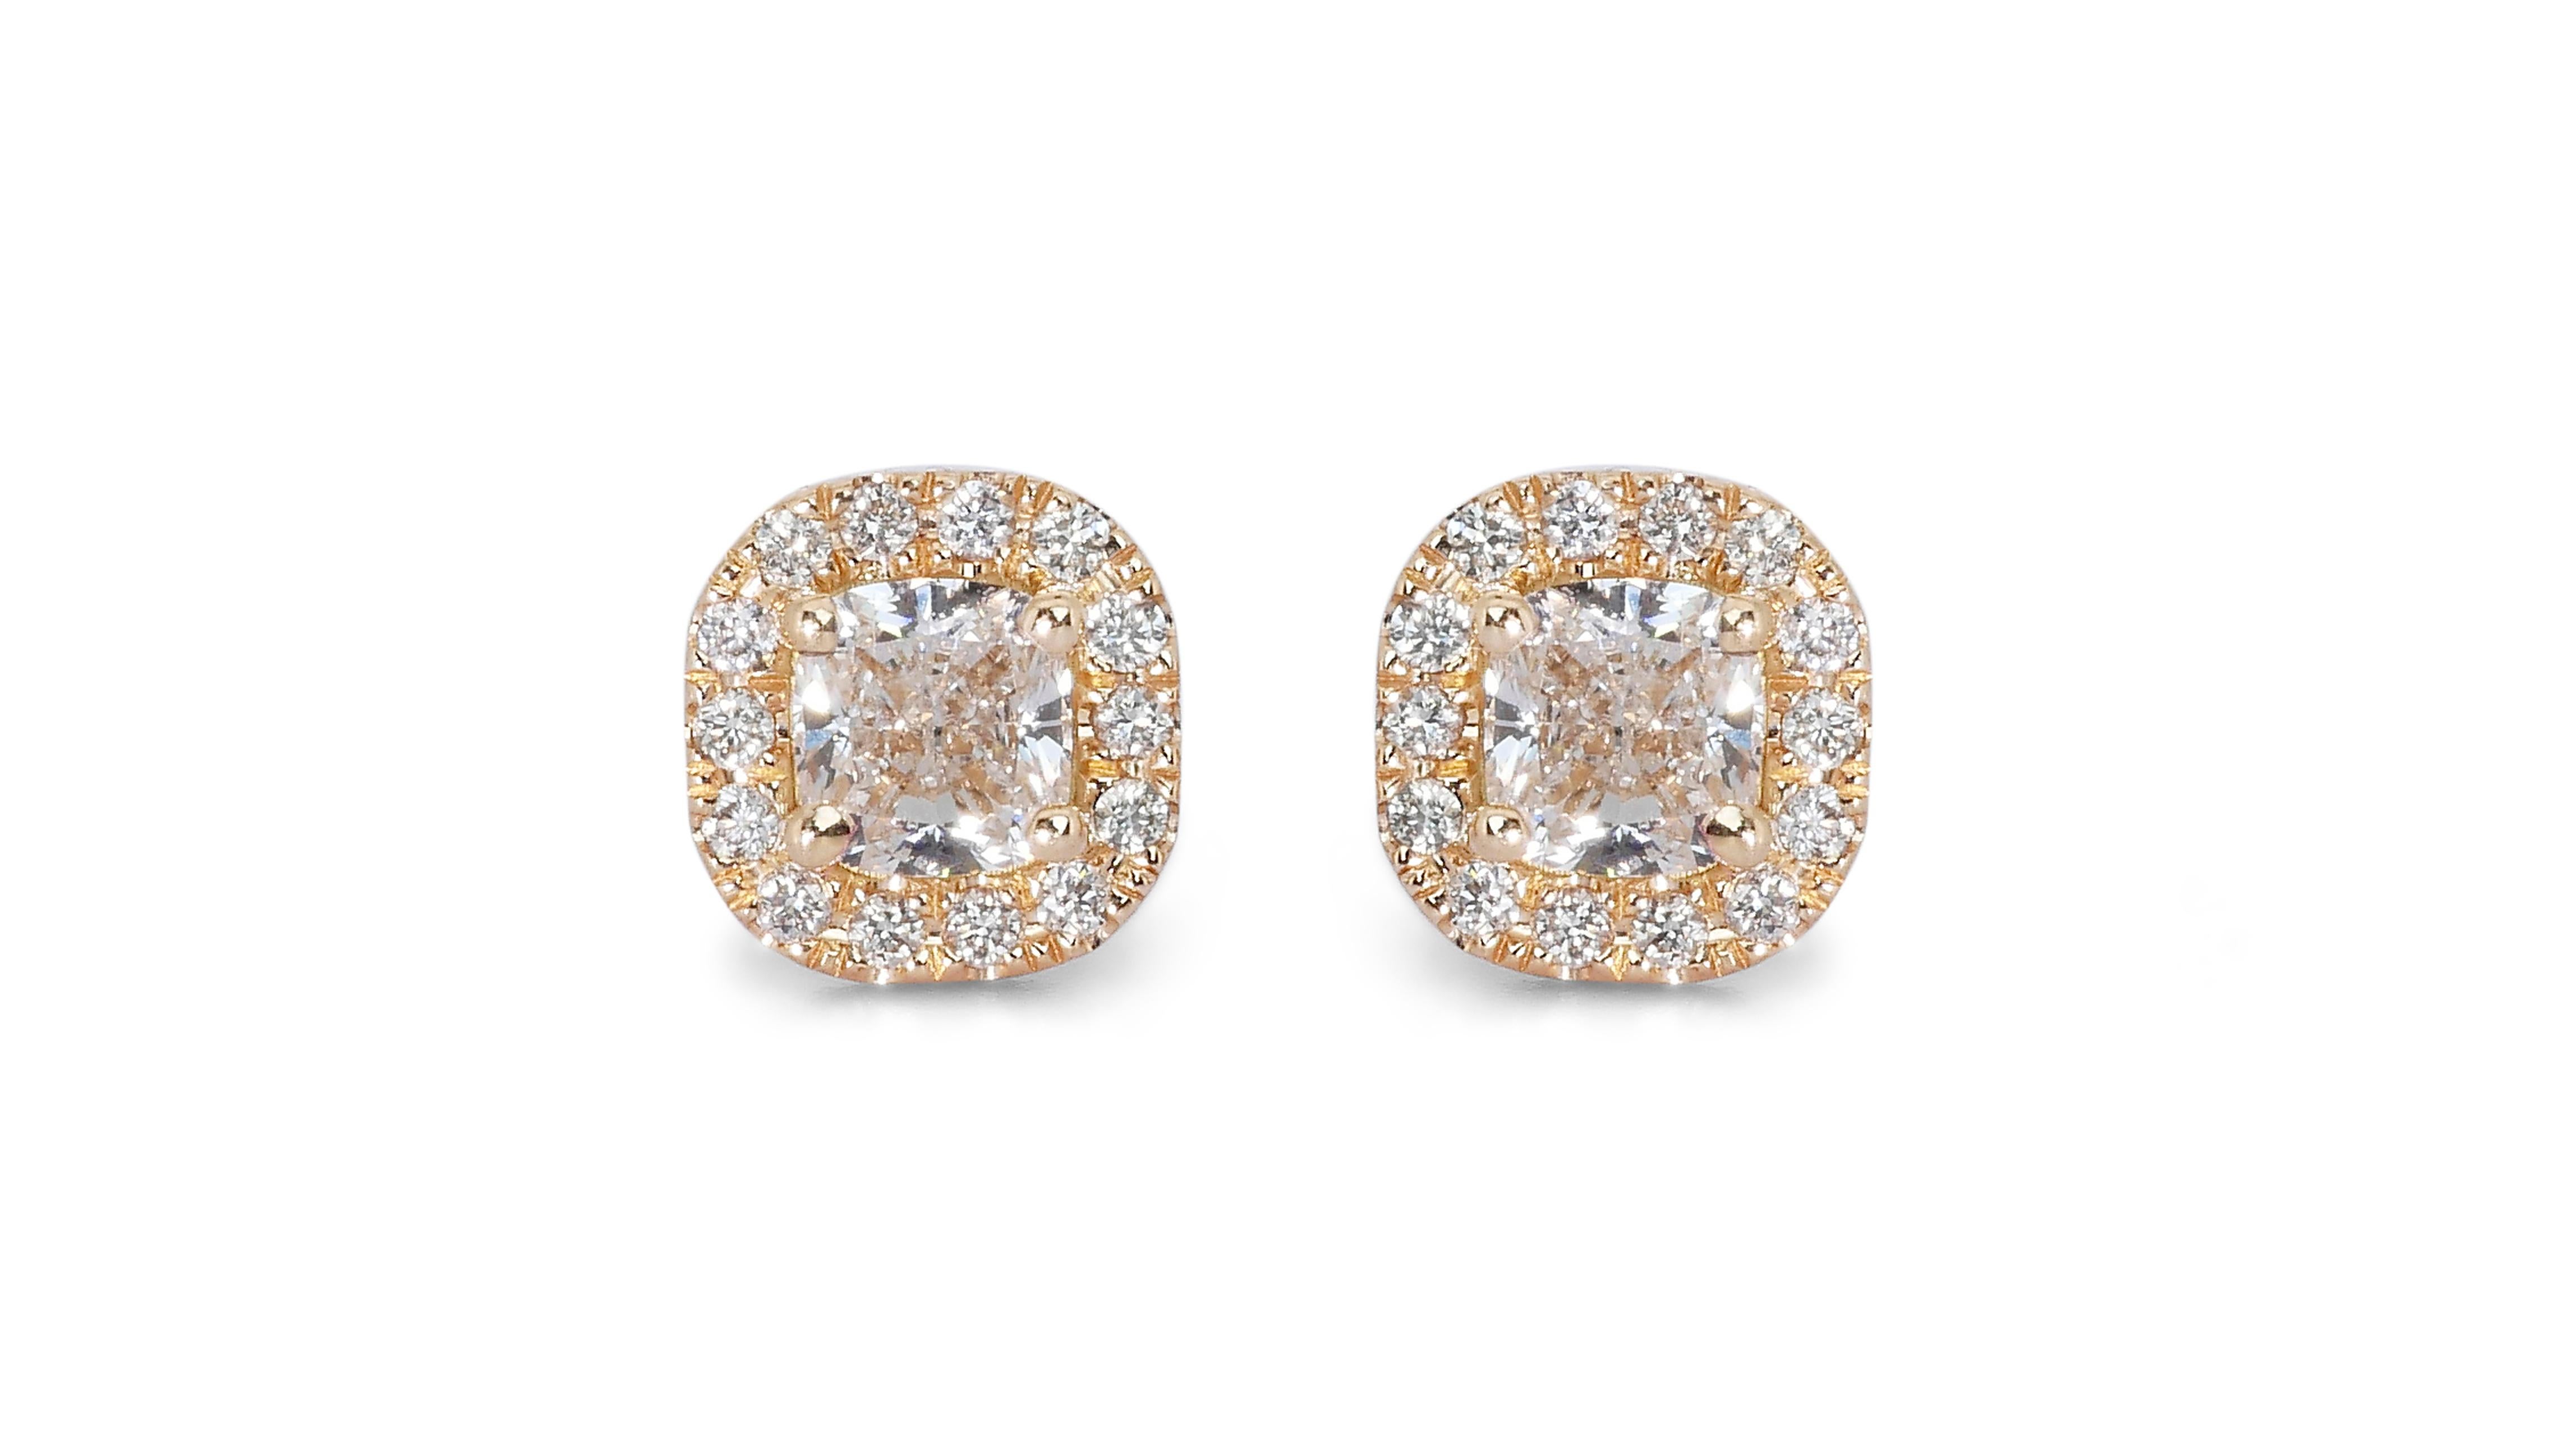 Glamouröse Halo-Ohrringe mit 2,20 Karat Diamanten in  18 Karat Gelbgold – GIA-zertifiziert

Erhöhen Sie Ihren Stil mit diesen glamourösen Ohrringen aus 18 Karat Roségold, die in der Mitte jeweils einen Diamanten im Kissenschliff mit einem